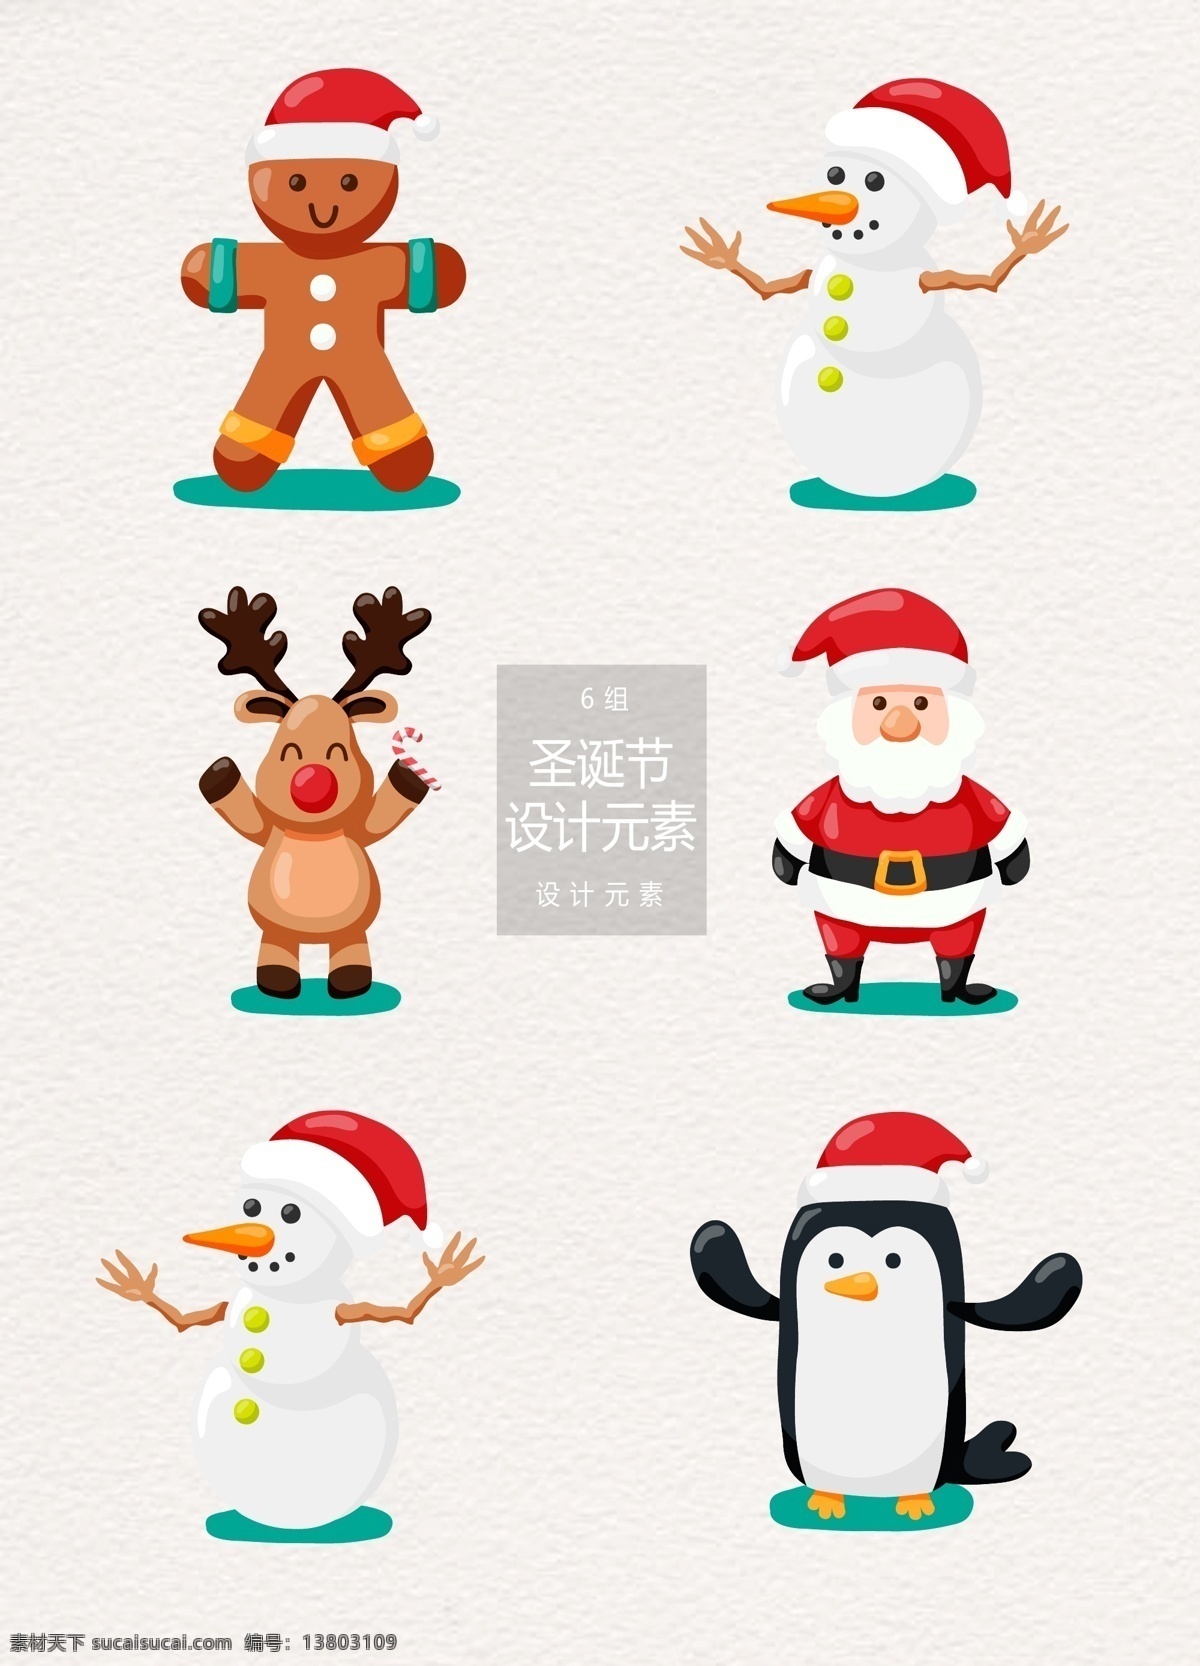 圣诞节 卡通 人物 元素 设计元素 卡通人物 圣诞老人 圣诞 雪人 姜饼人 麋鹿 企鹅